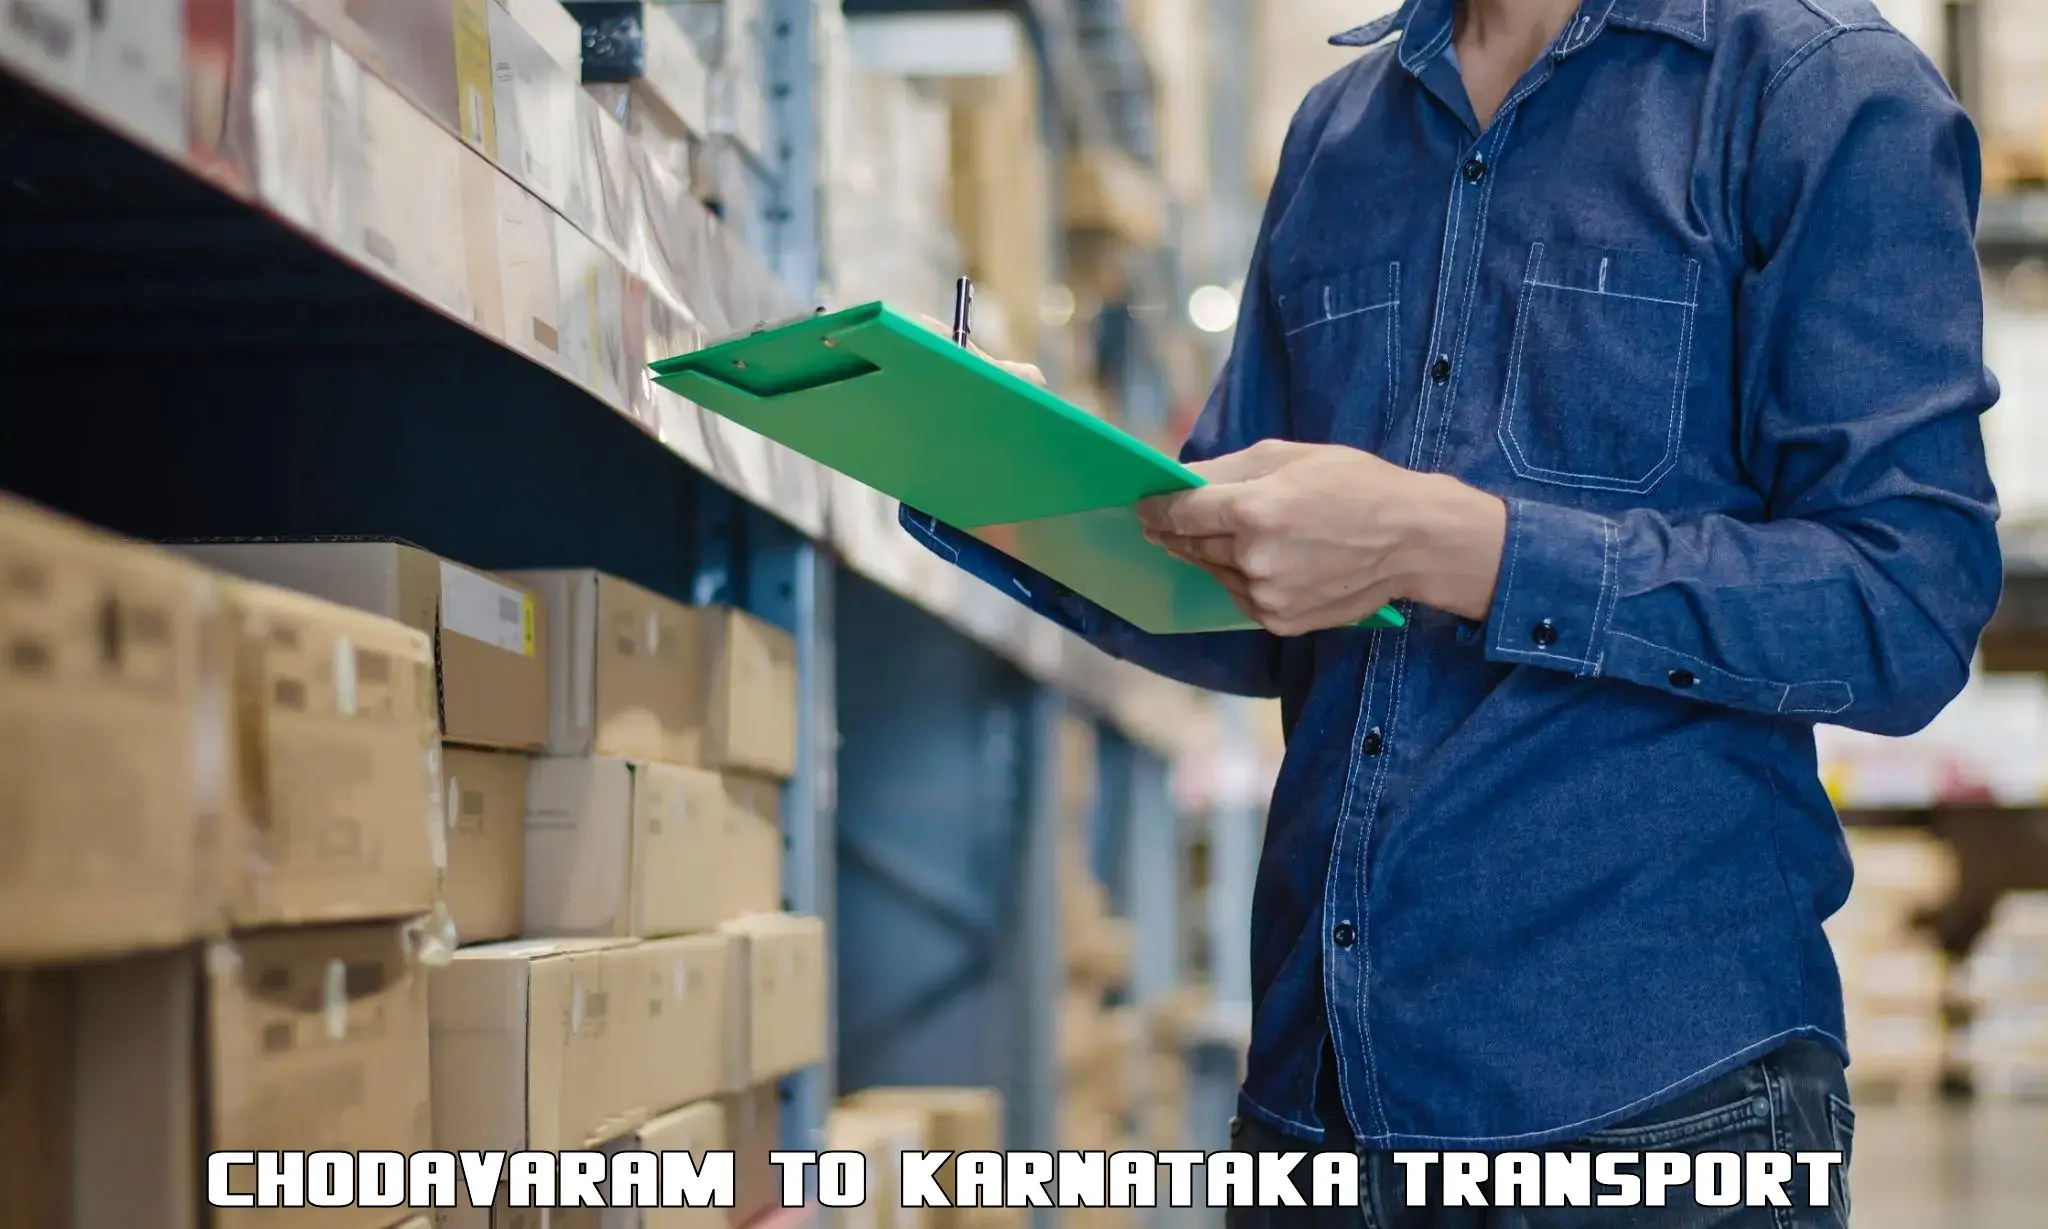 International cargo transportation services Chodavaram to Khanapur Karnataka